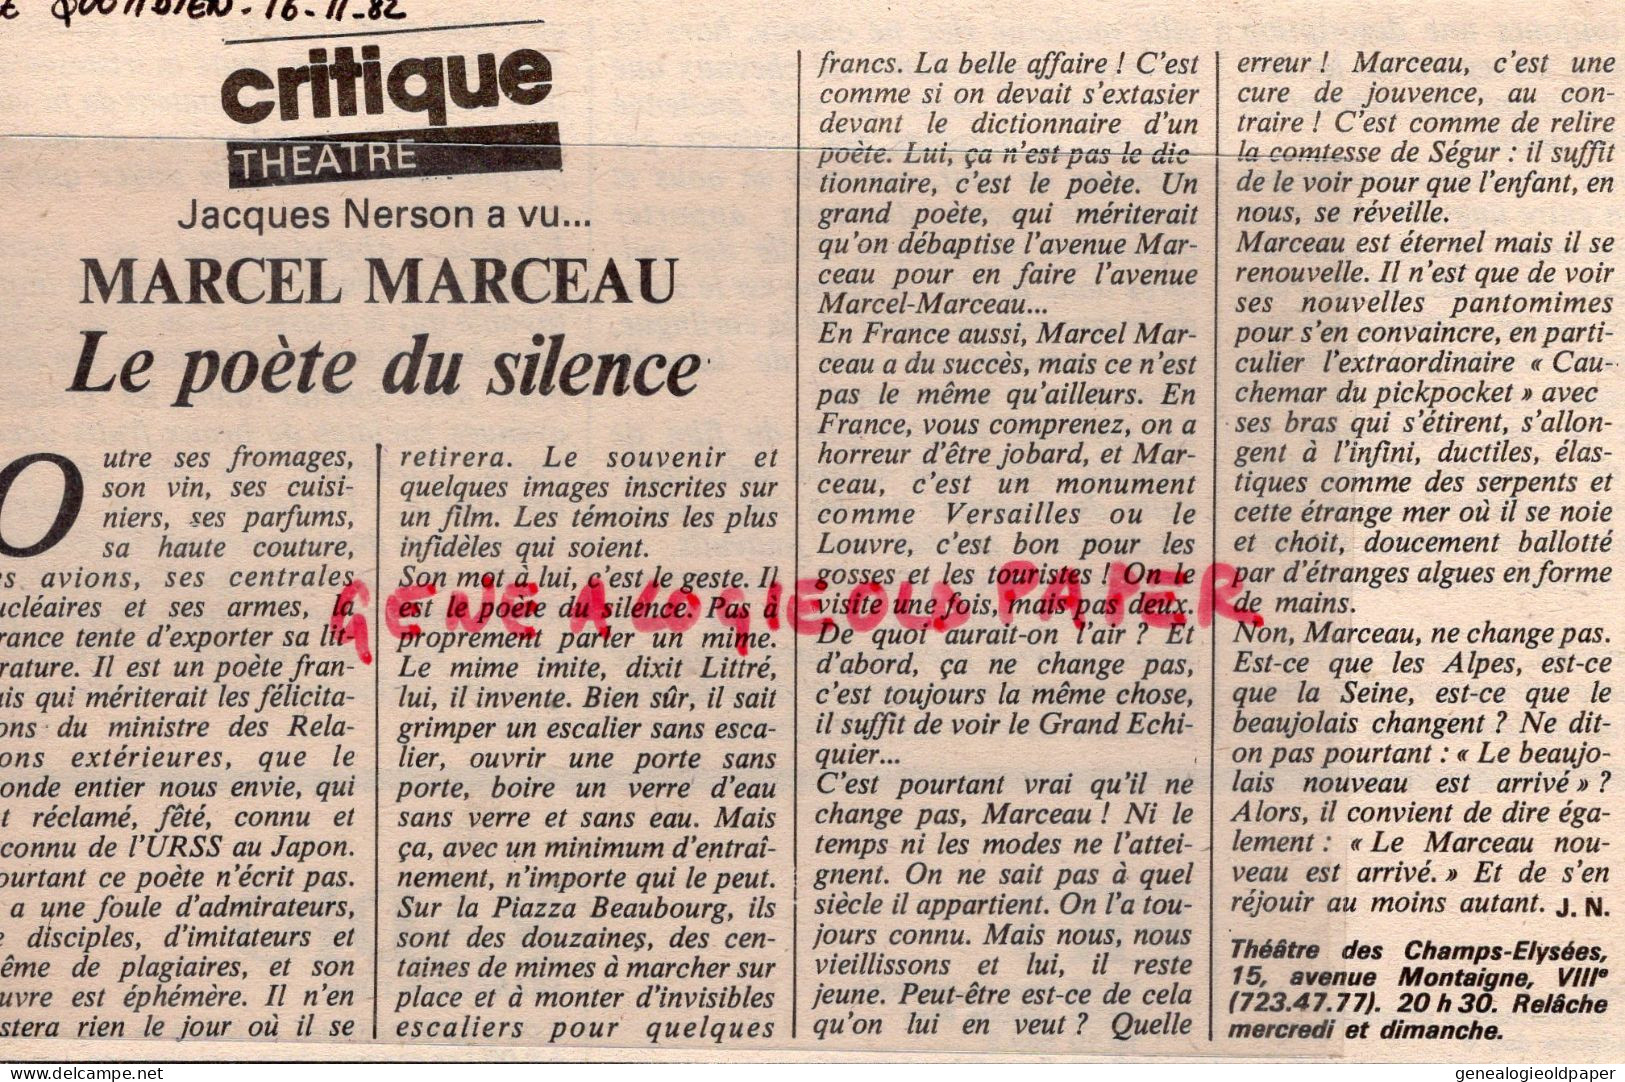 75- PARIS-PROGRAMME THEATRE CHAMPS ELYSEES- MIME MARCEL MARCEAU-21-11-1982-ARTICLES PRESSE + BILLETS ENTREE